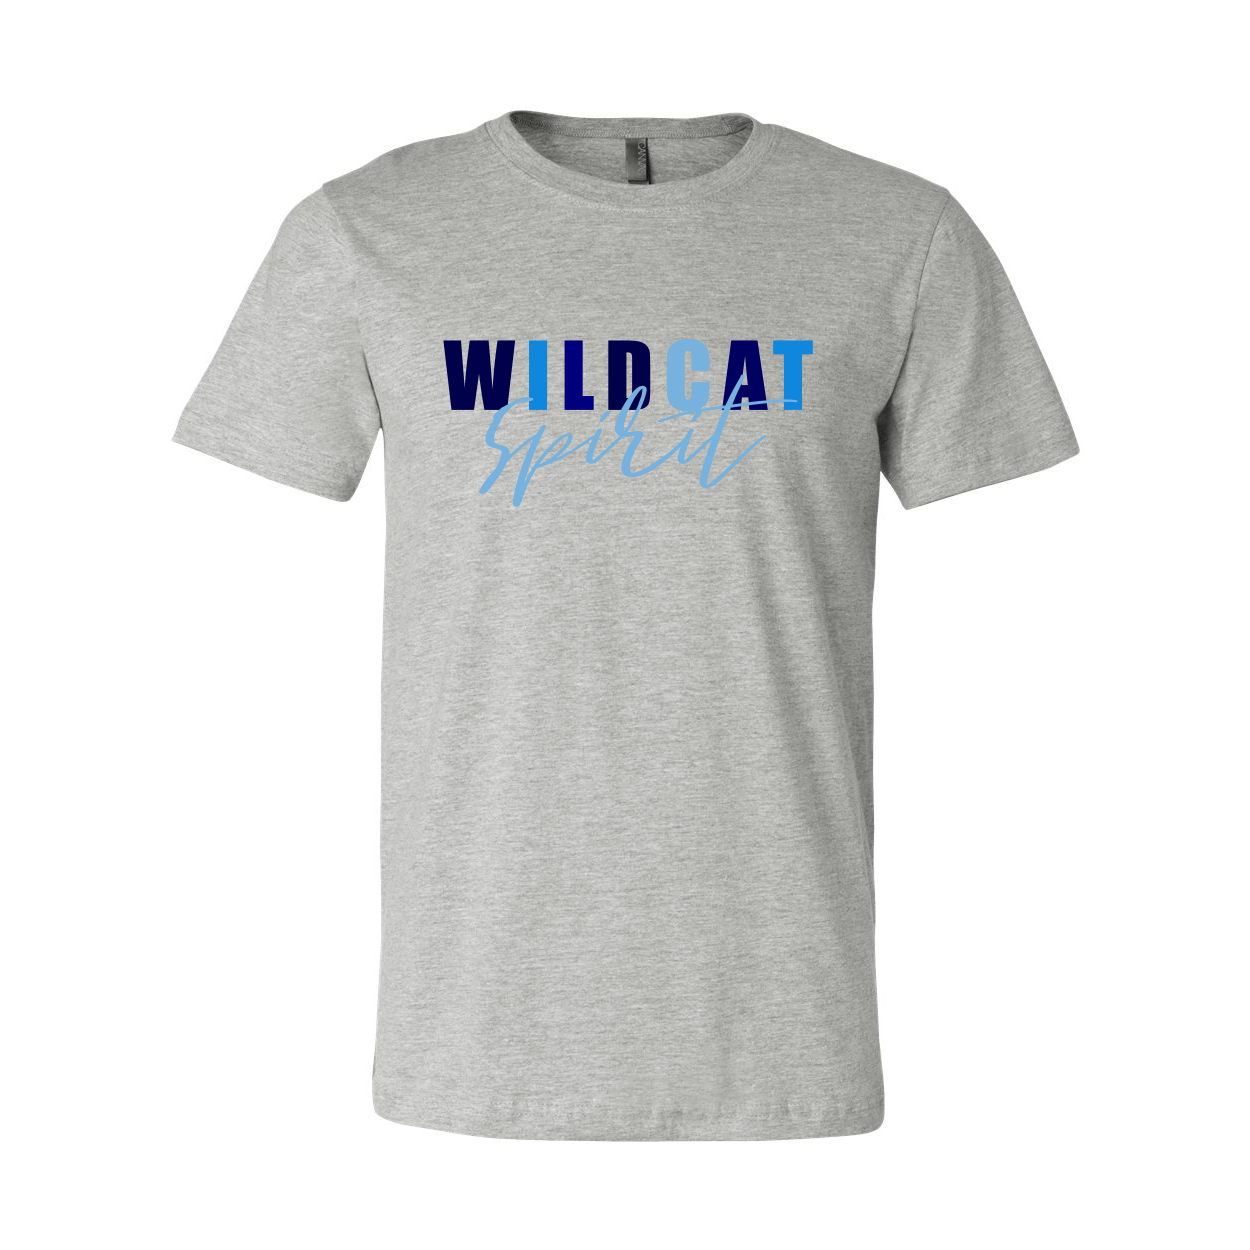 Wildcat Spirit T-Shirt